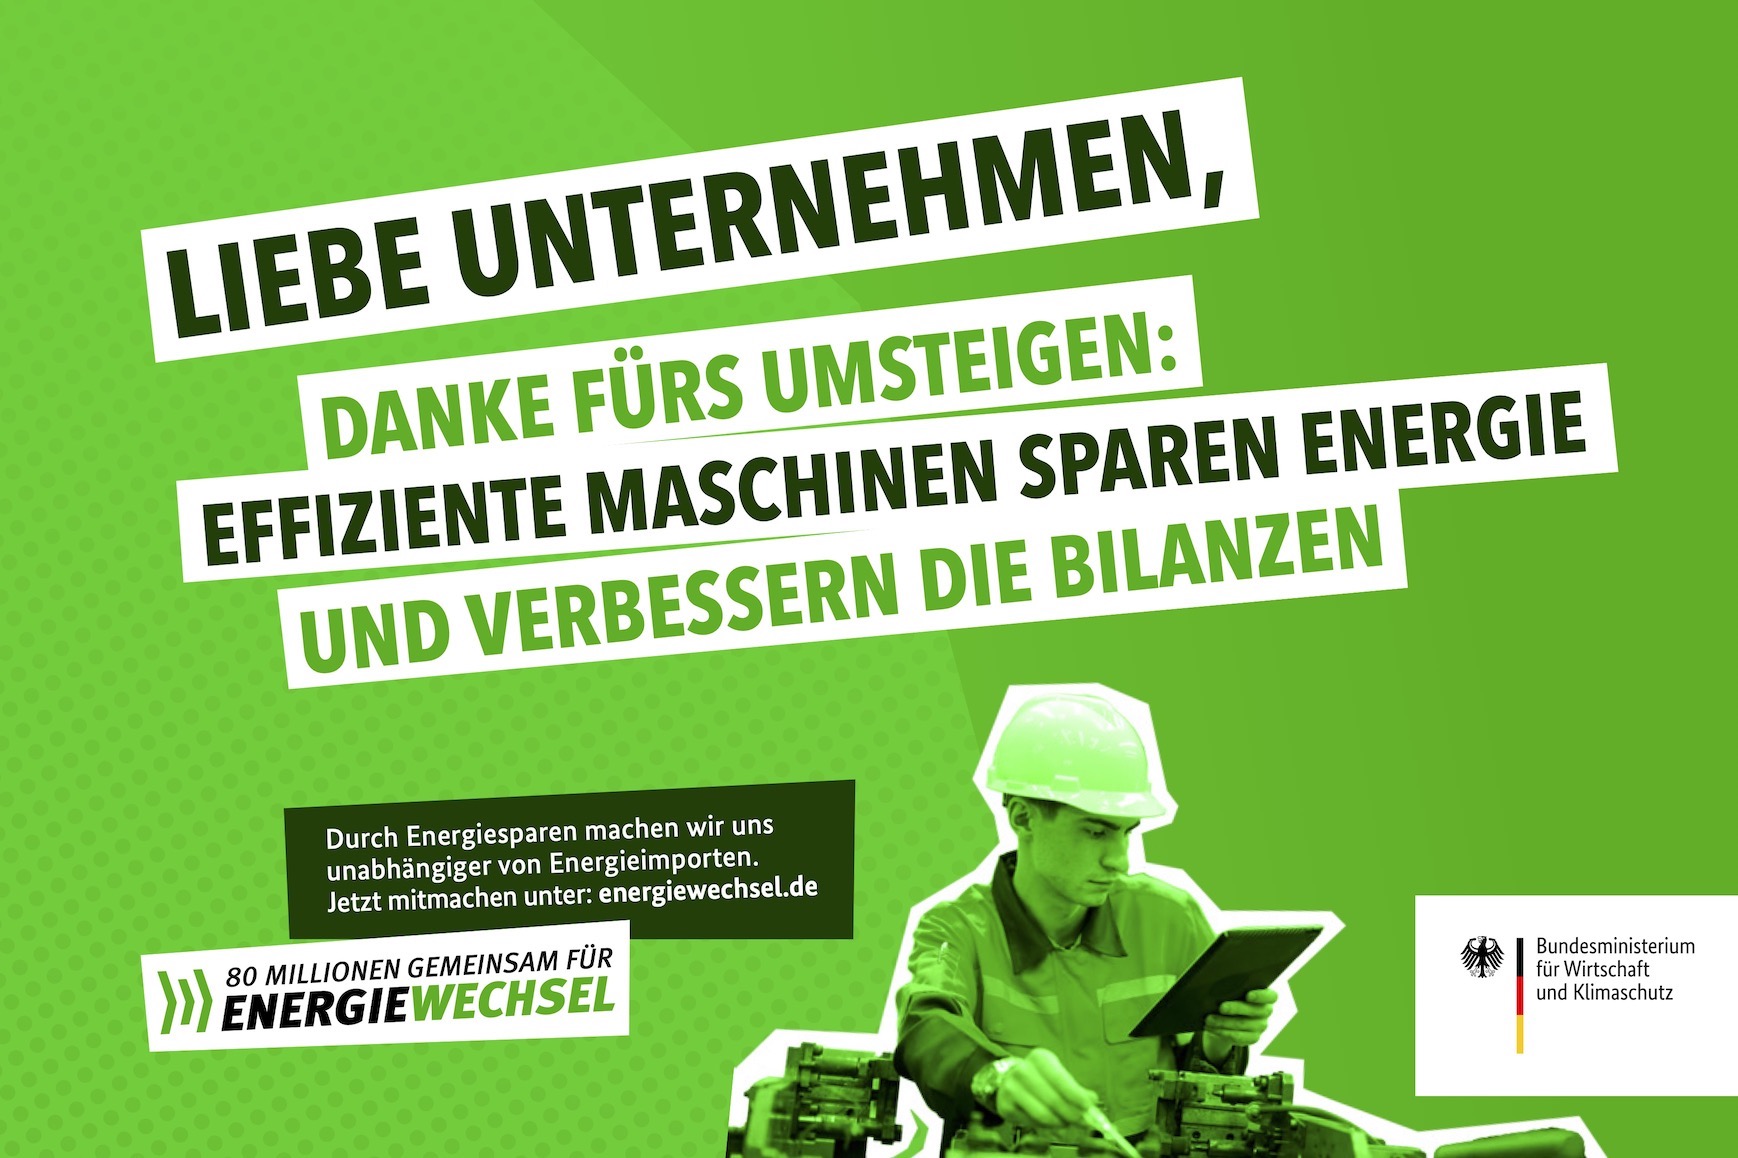 Kampagnenmotiv „Liebe Unternehmen” | 80 Millionen gemeinsam für Energiewechsel